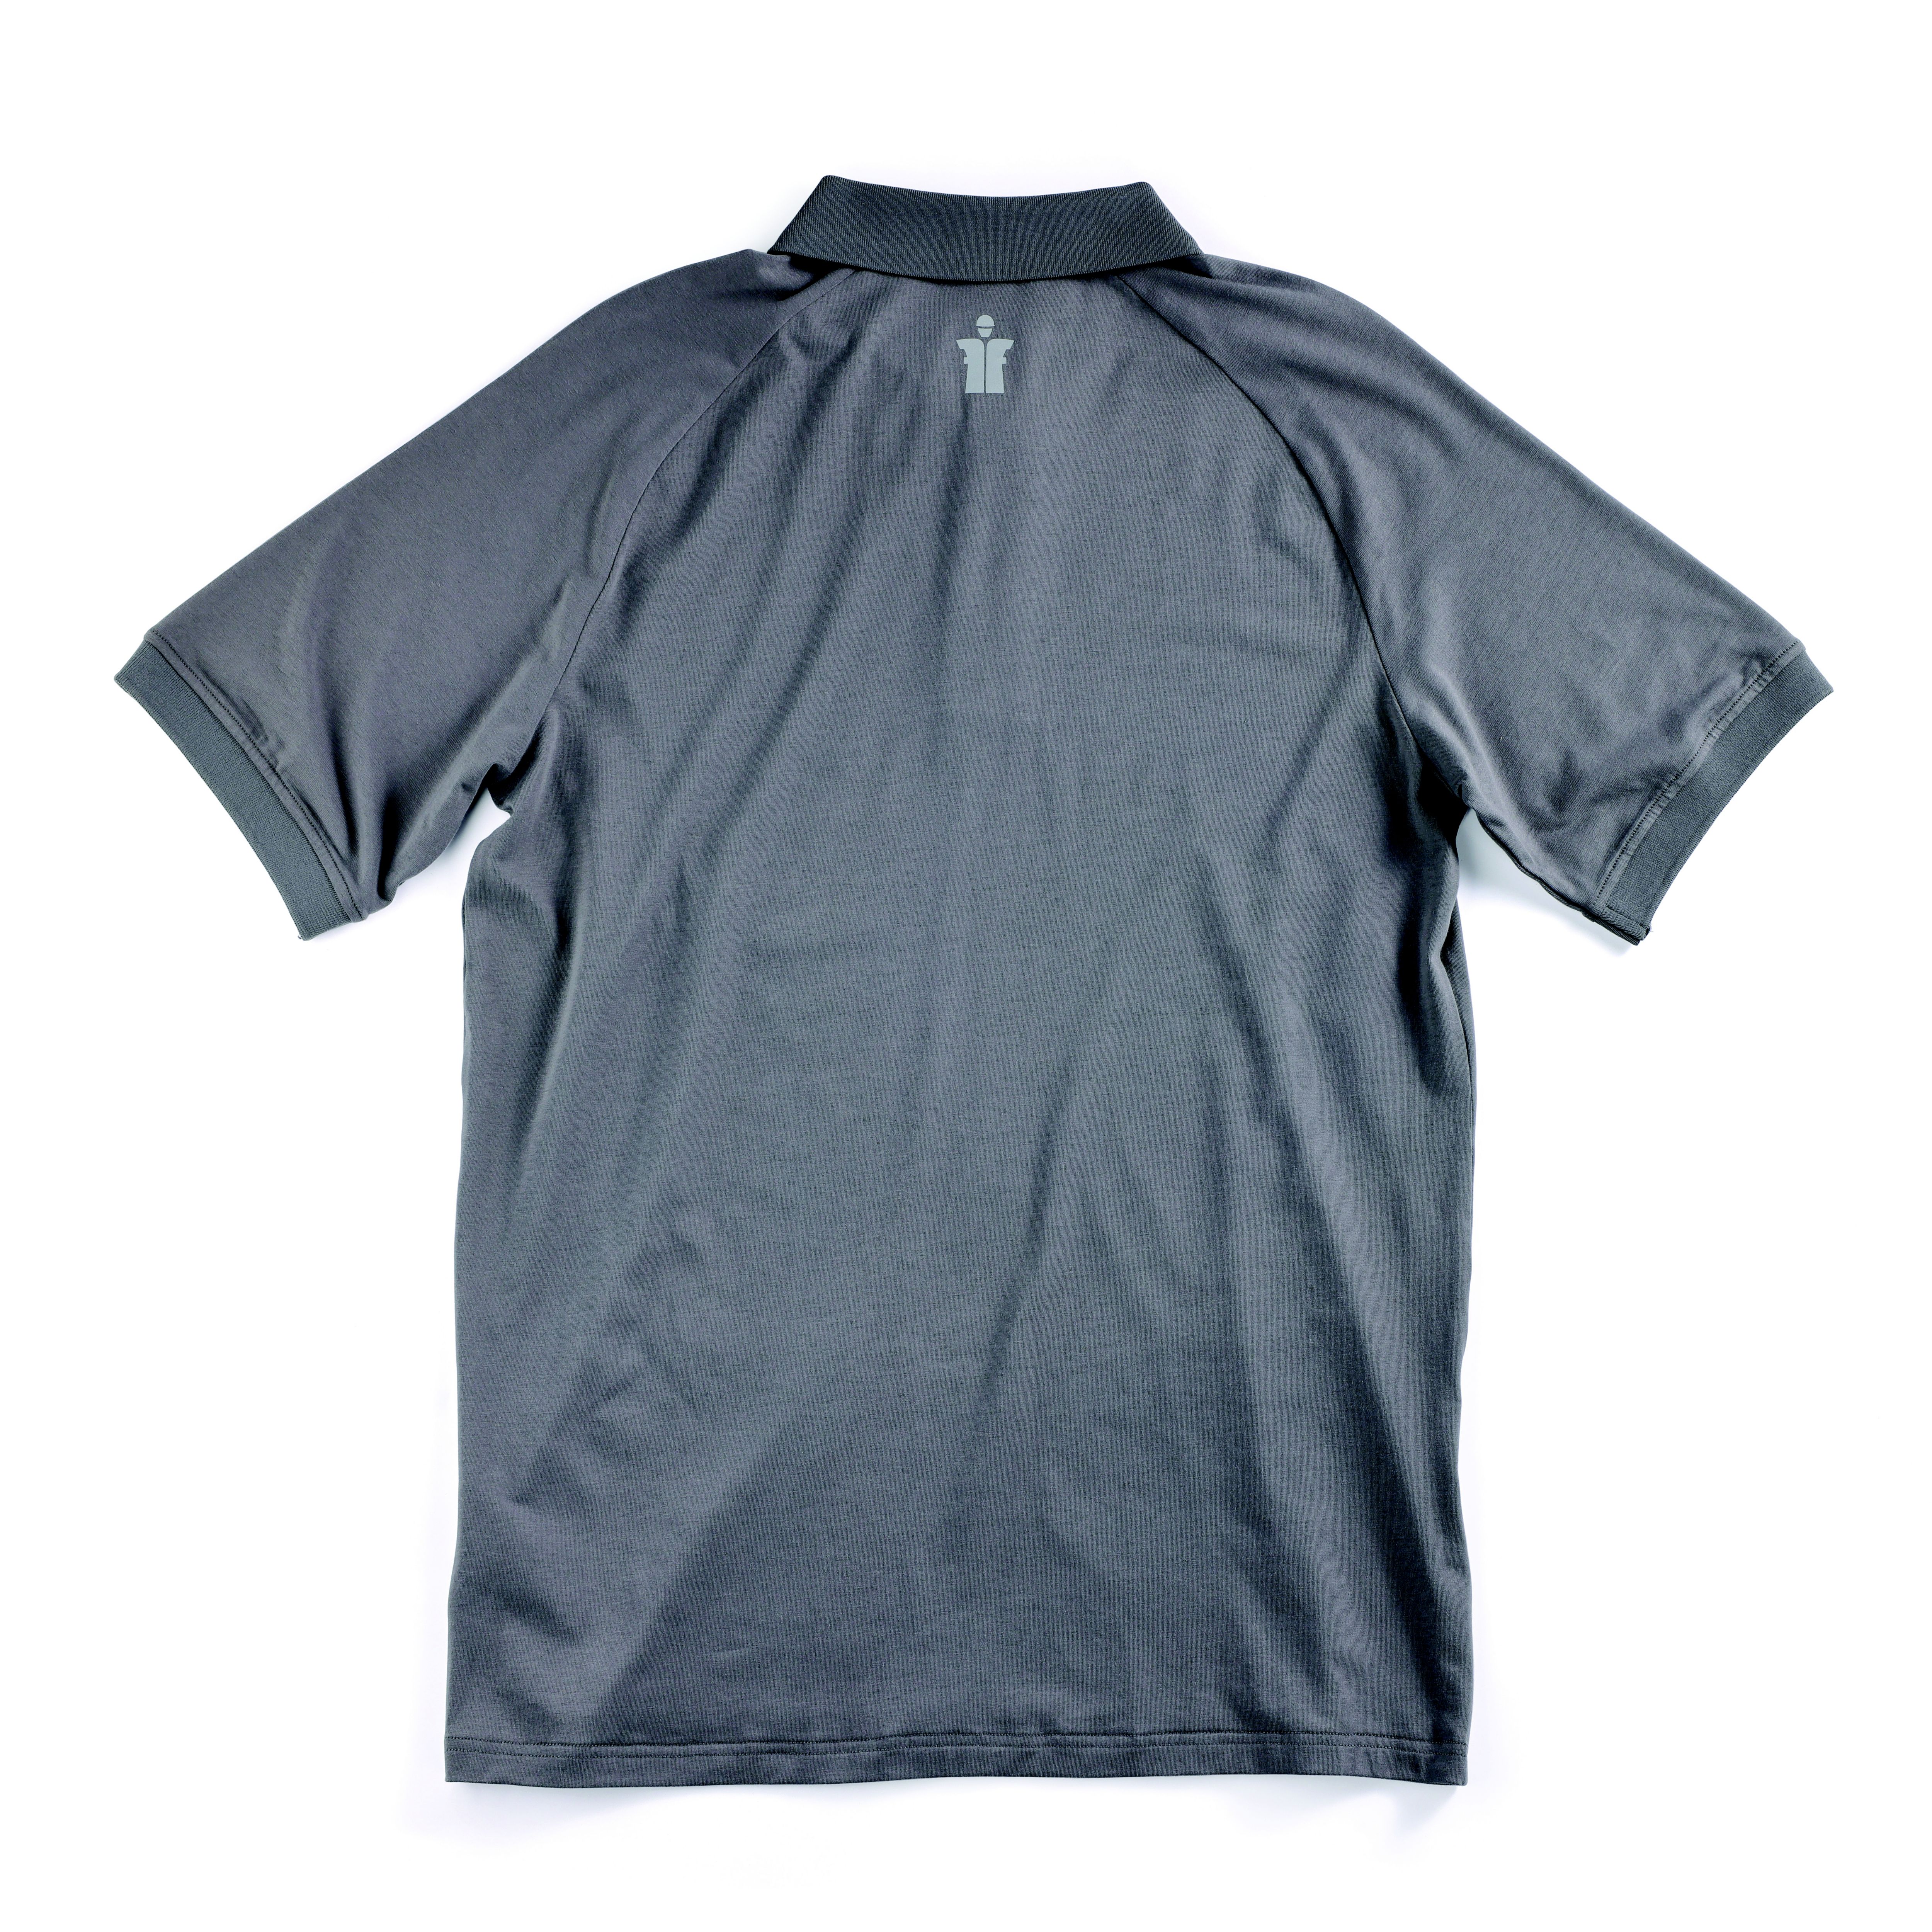 Scruffs Graphite Men's Polo shirt Medium